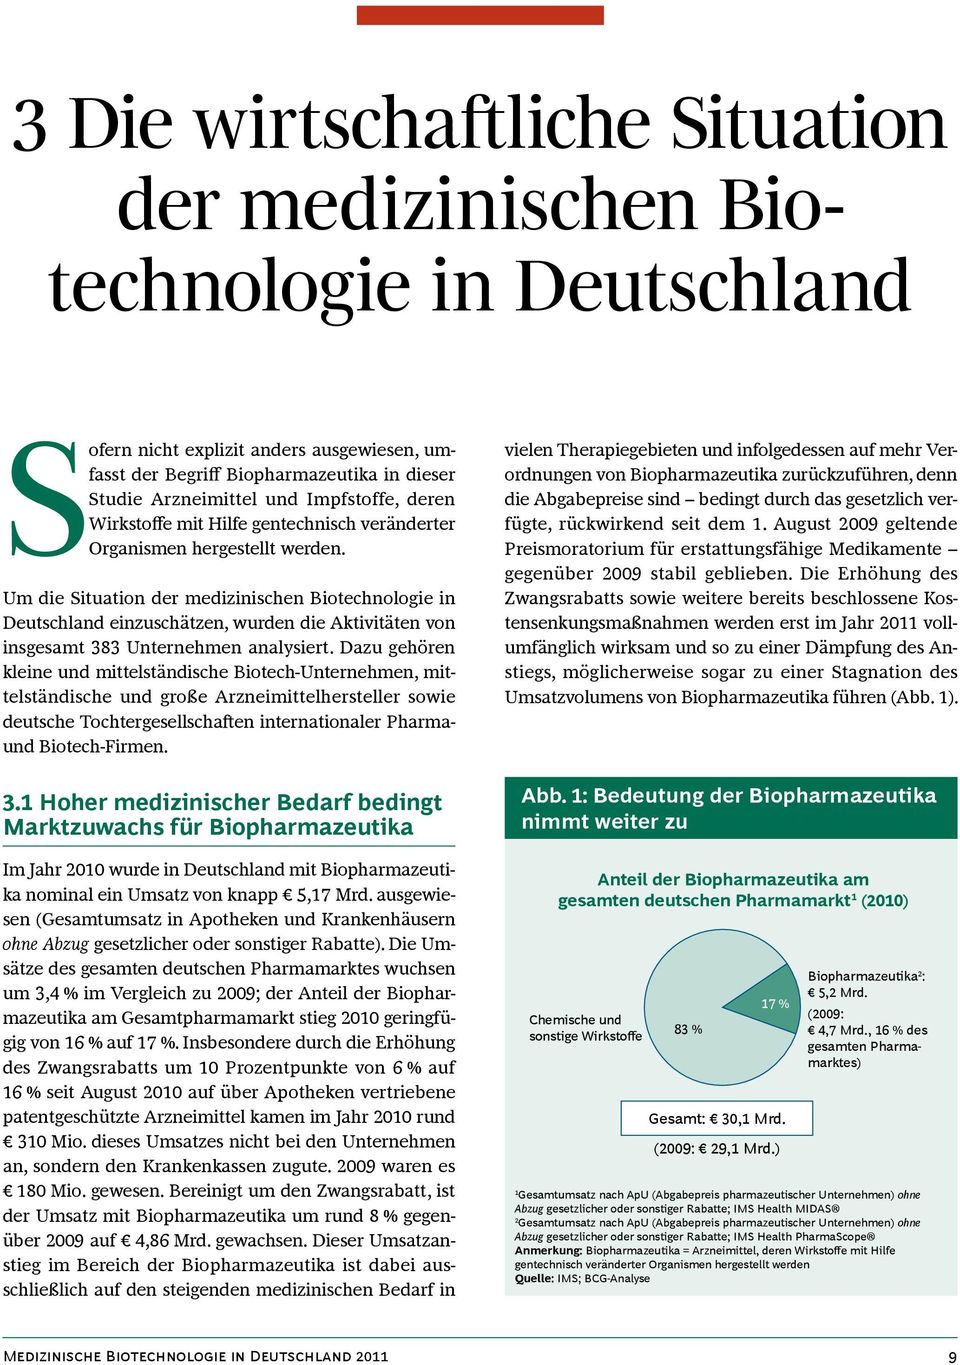 Um die Situation der medizinischen Biotechnologie in Deutschland einzuschätzen, wurden die Aktivitäten von insgesamt 383 Unternehmen analysiert.